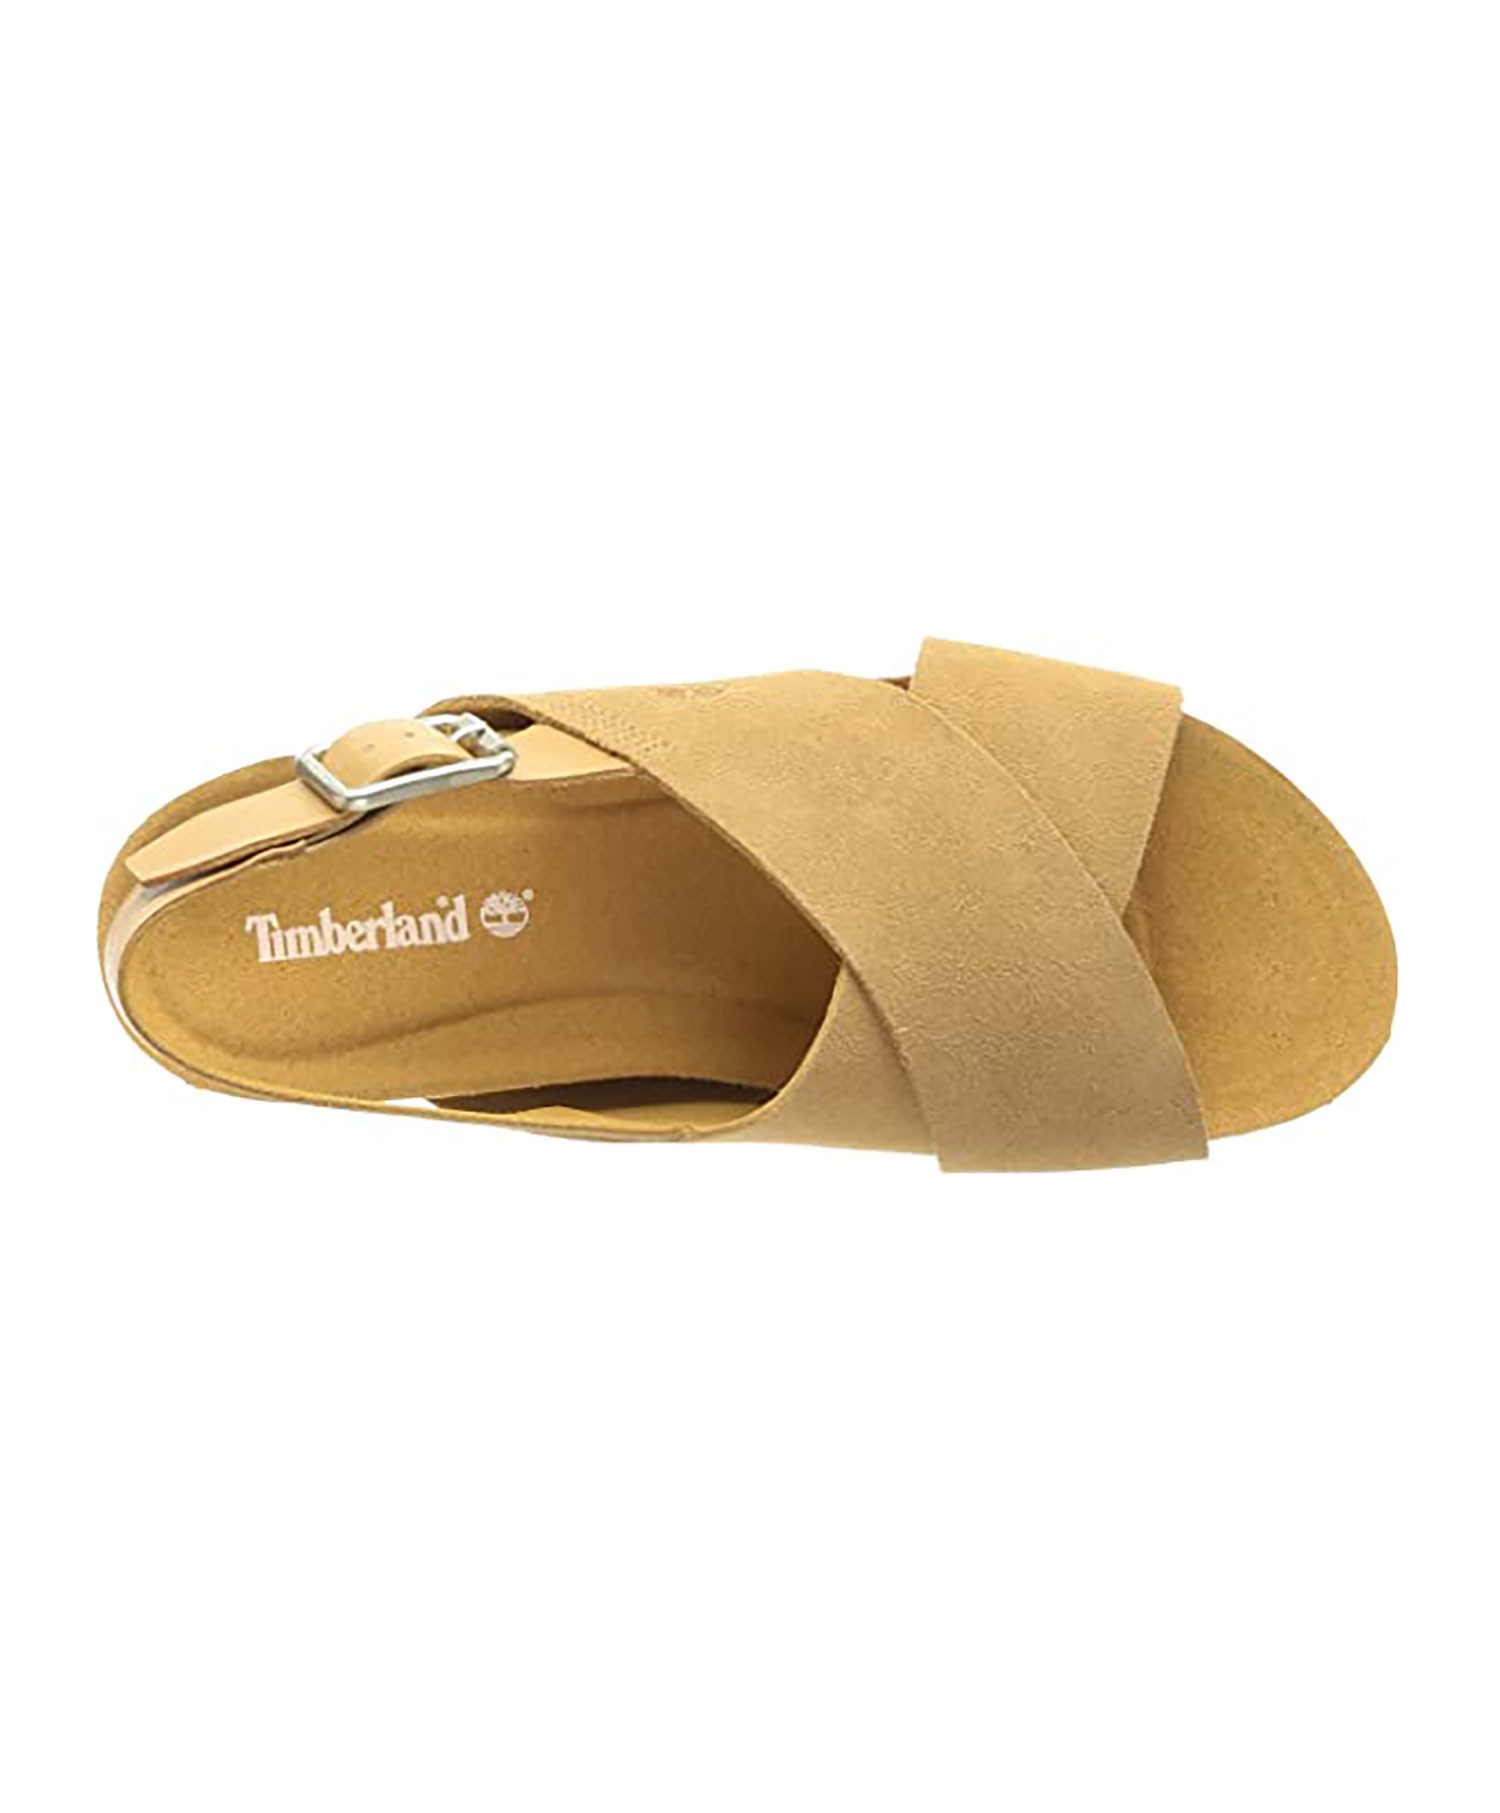 Timberland Sandal Malibu Waves Basic